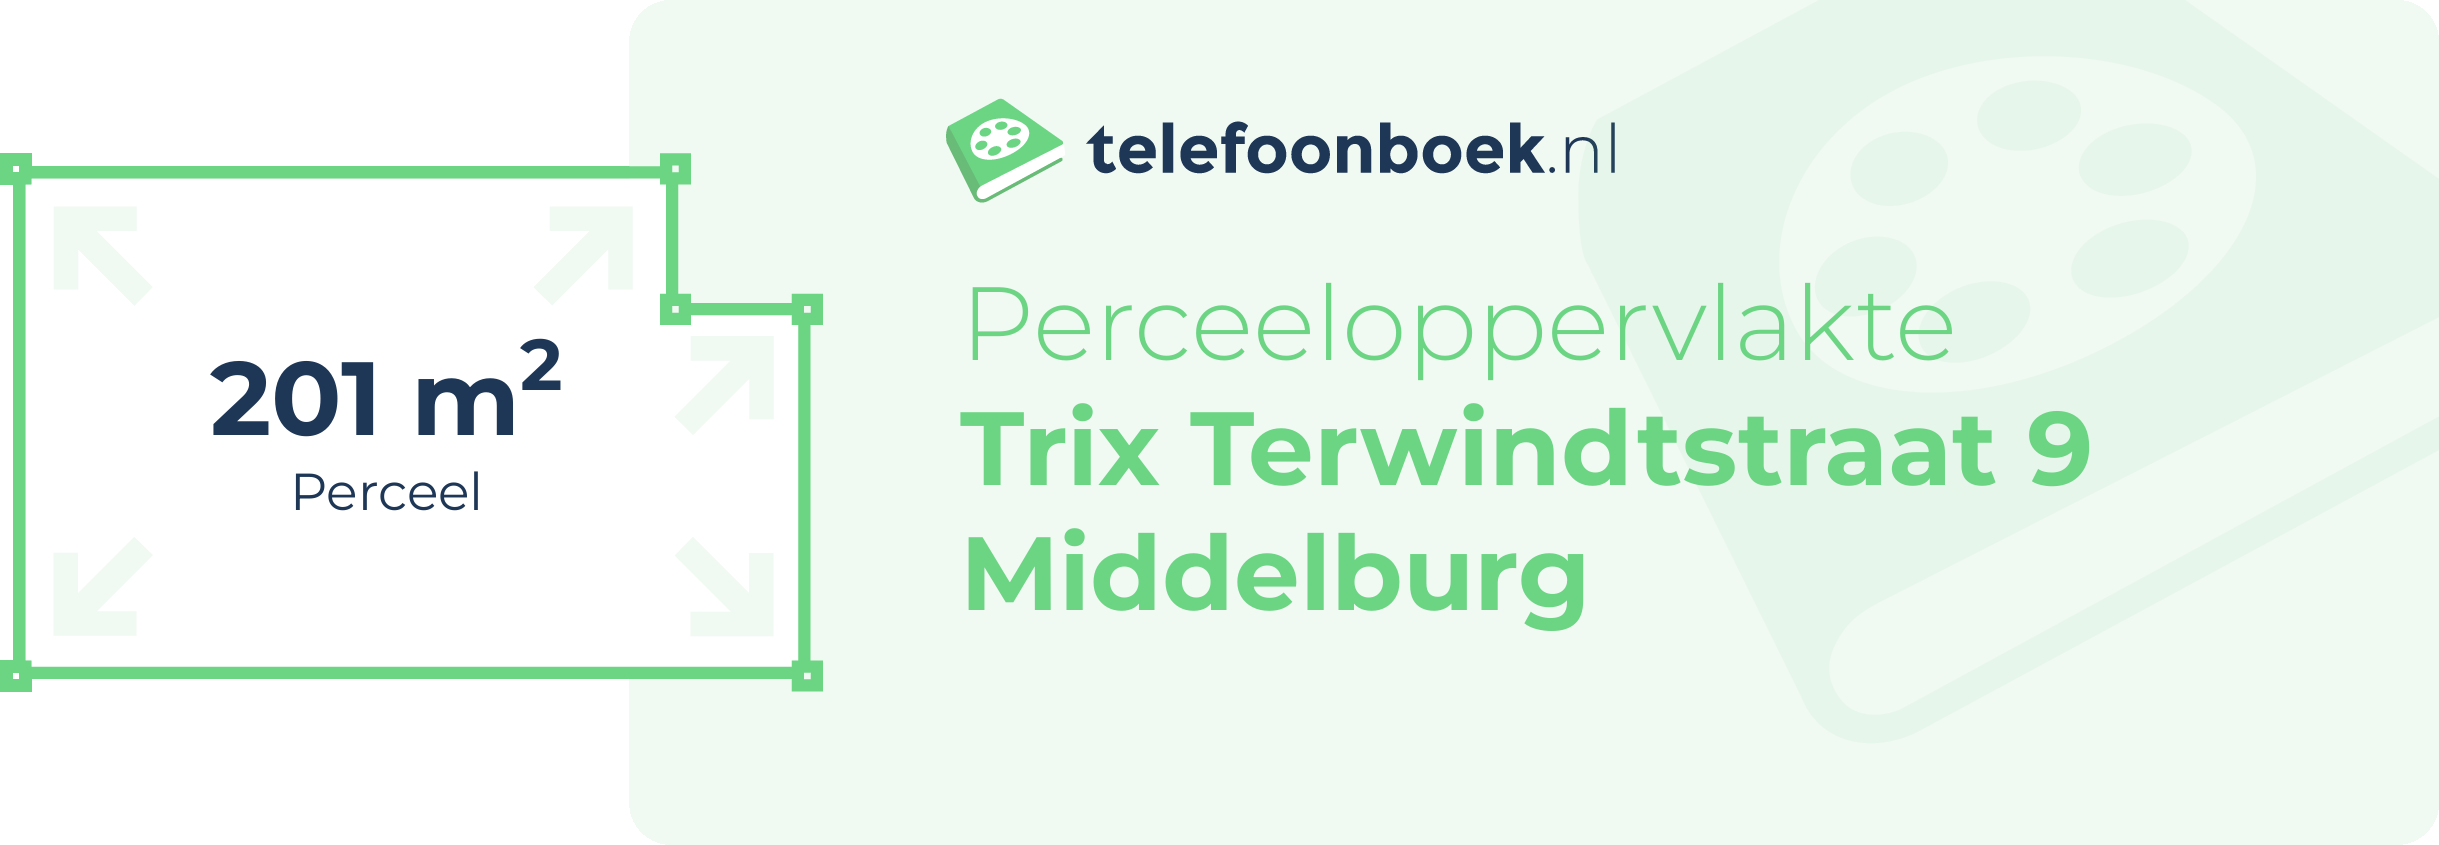 Perceeloppervlakte Trix Terwindtstraat 9 Middelburg